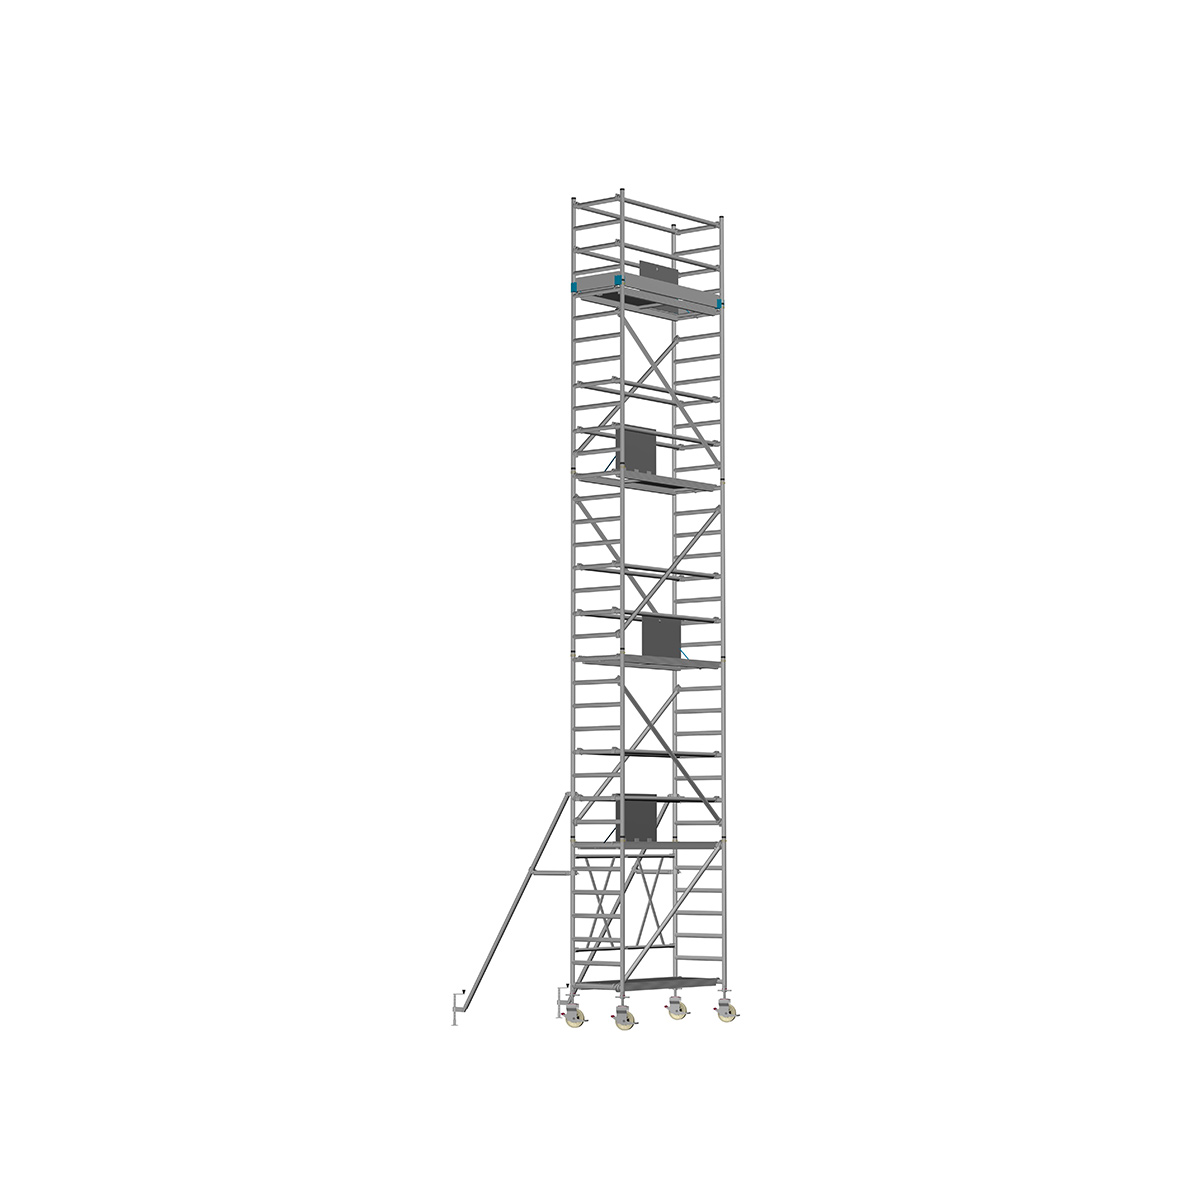 Chiemsee 2 PROFI- Länge: 2,54 m - Breite: 0,74 m, Standhöhe 11,00 m